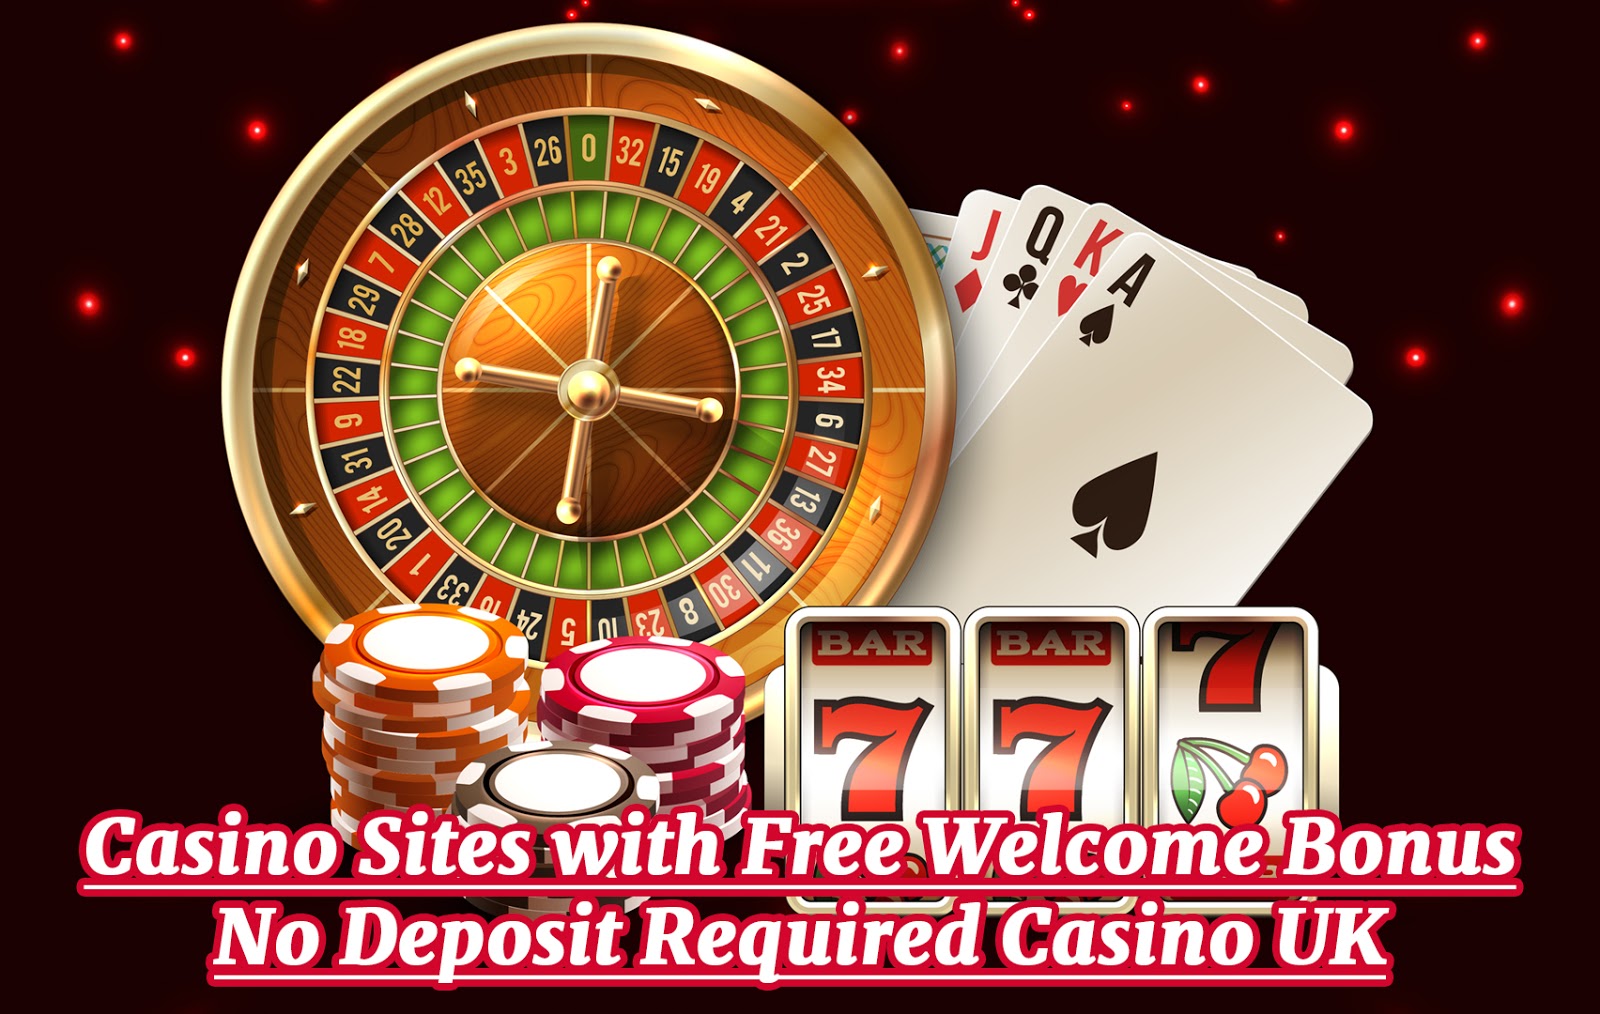 Free Welcome Bonus No Deposit Required Casino UK